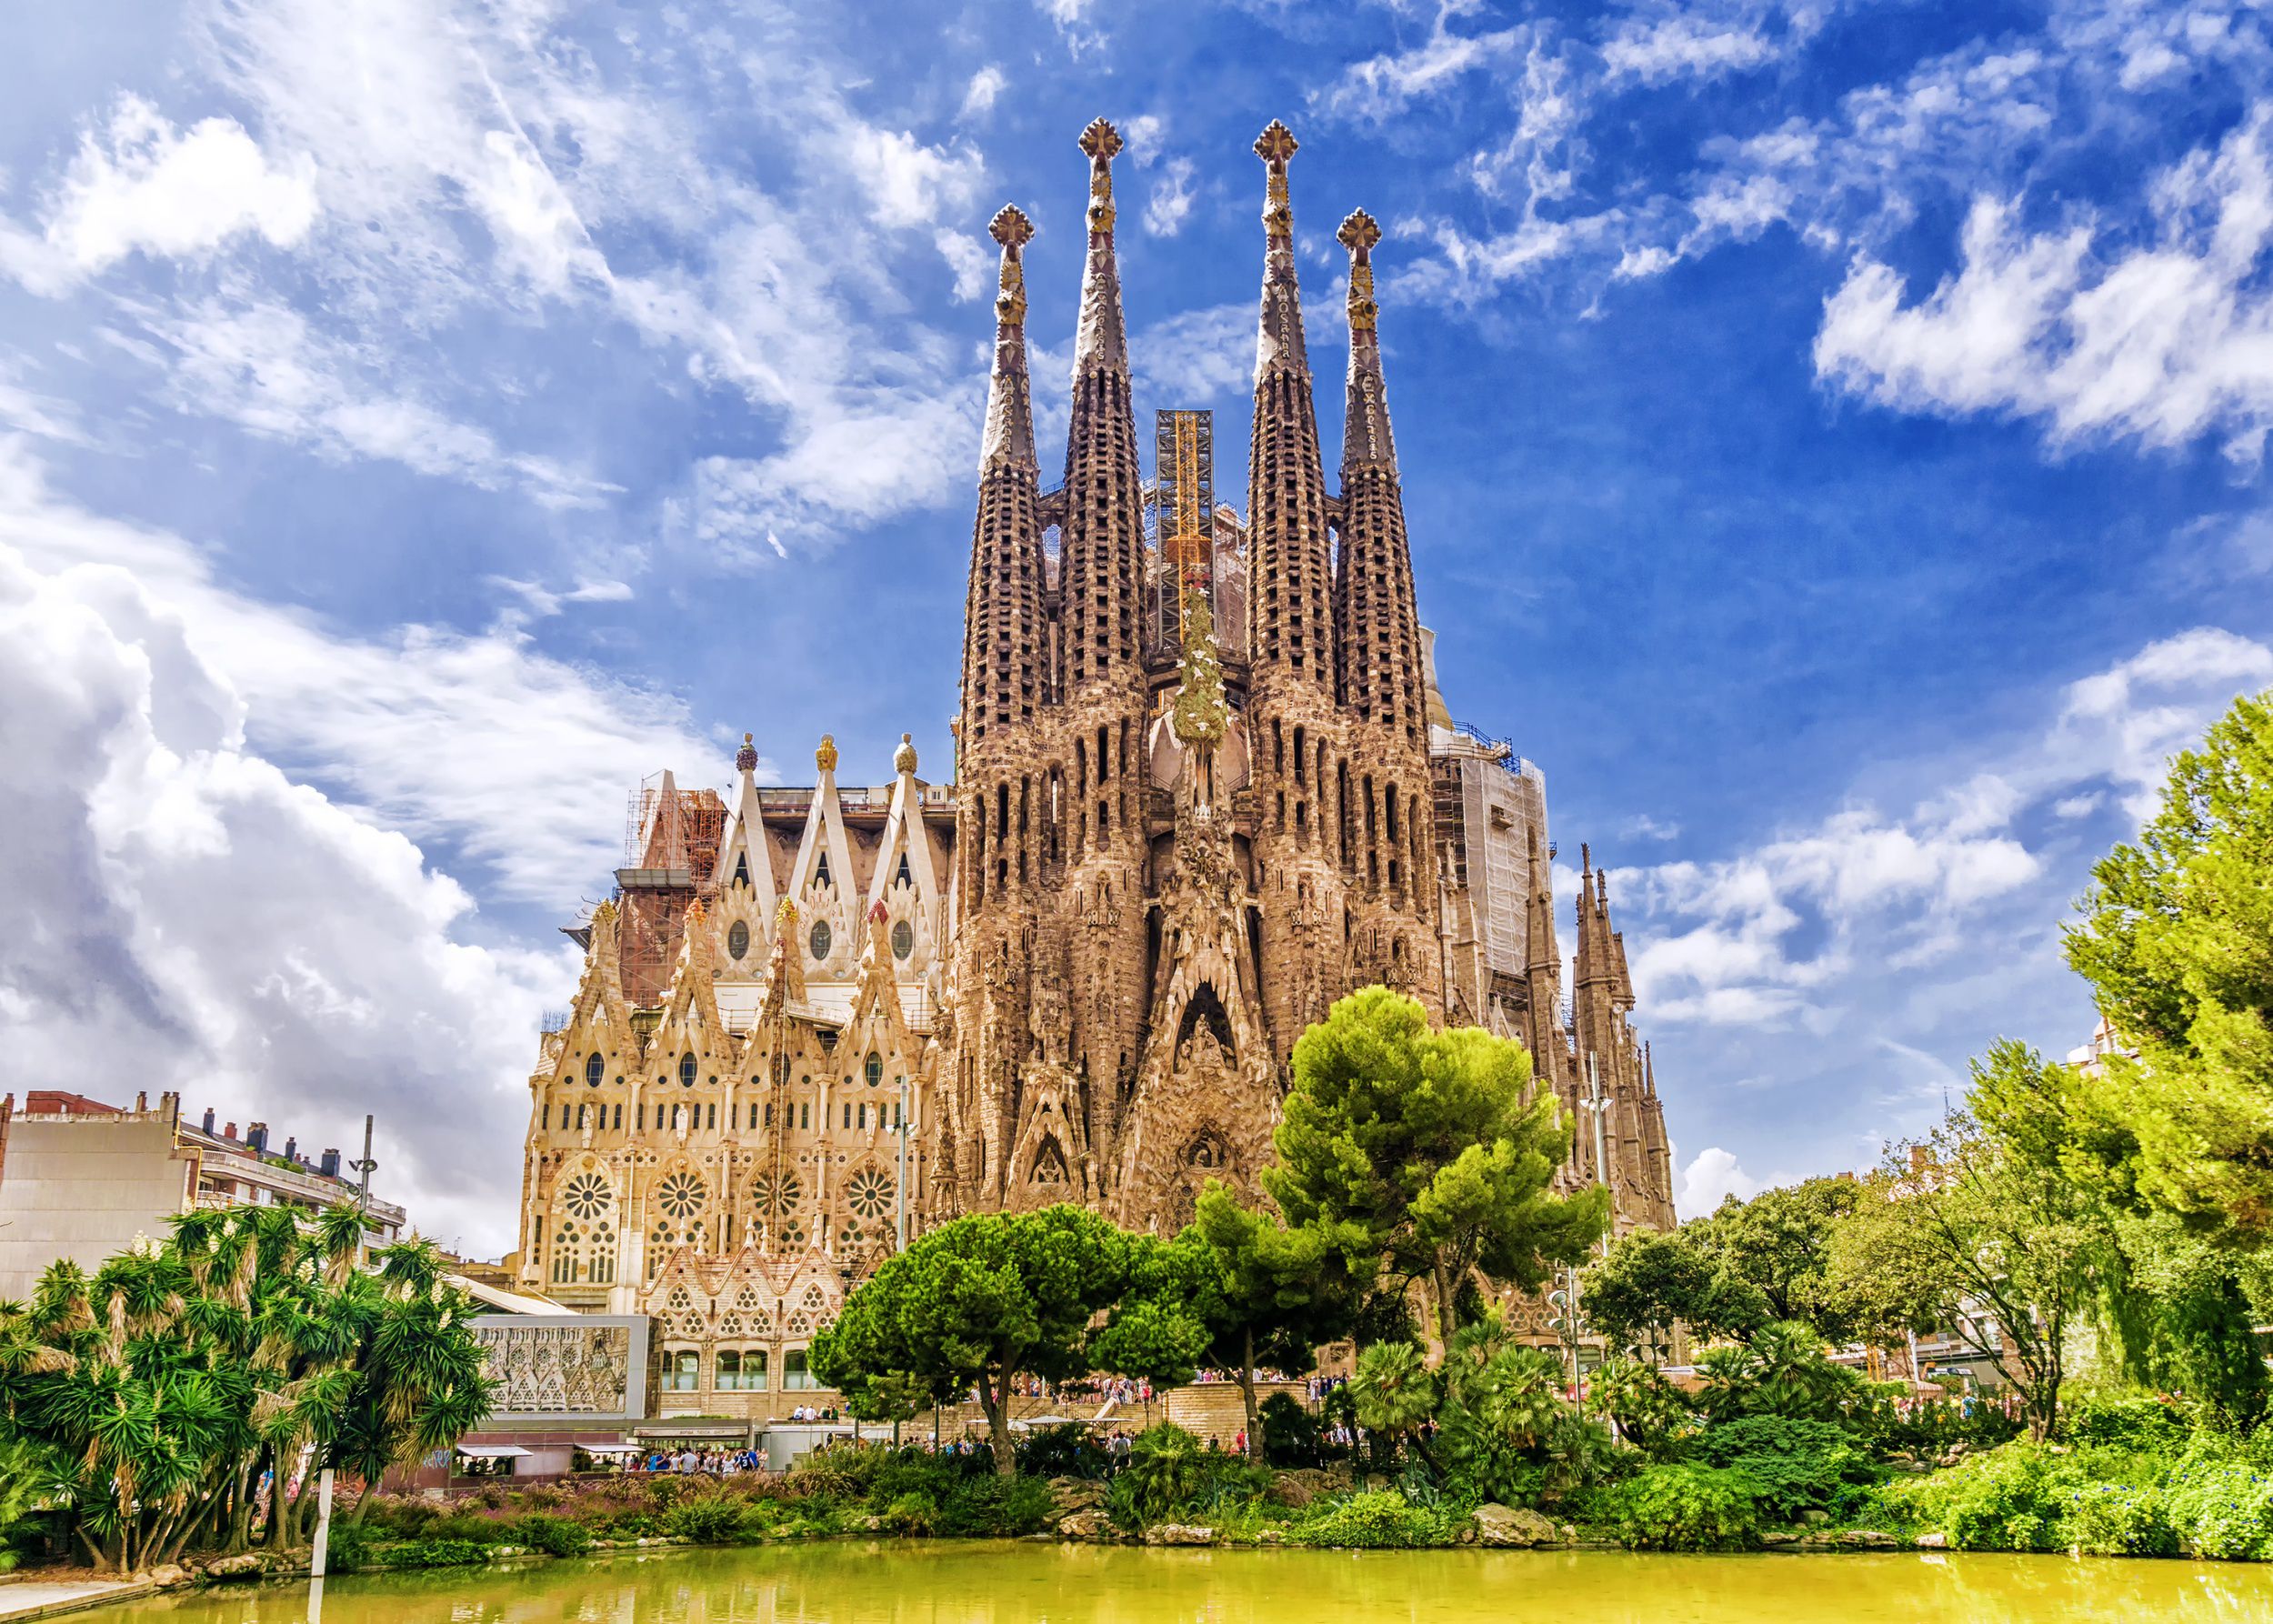 Sagrada Familia: i lavori conclusi dopo 140 anni